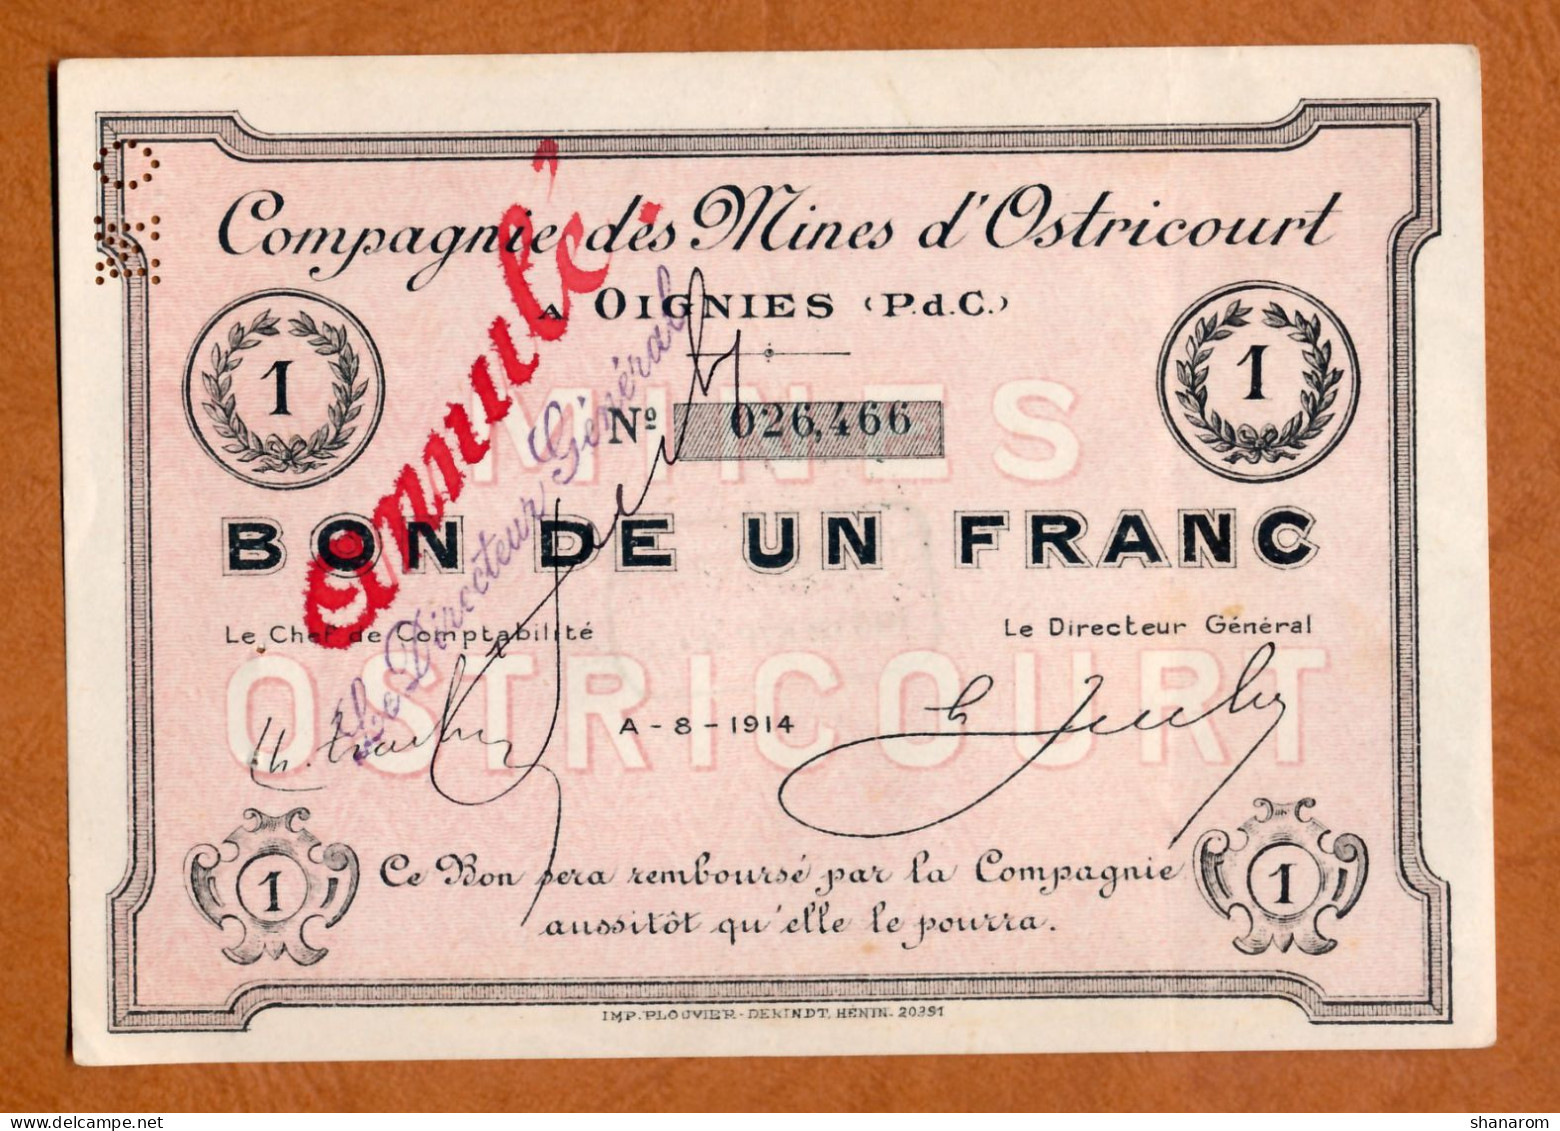 1914-1918 // Commune De OIGNIES (Pas De Calais 62) // Août 1914 // MINES D'OSTRICOURT // Bon De Un Franc // Annulé - Bons & Nécessité